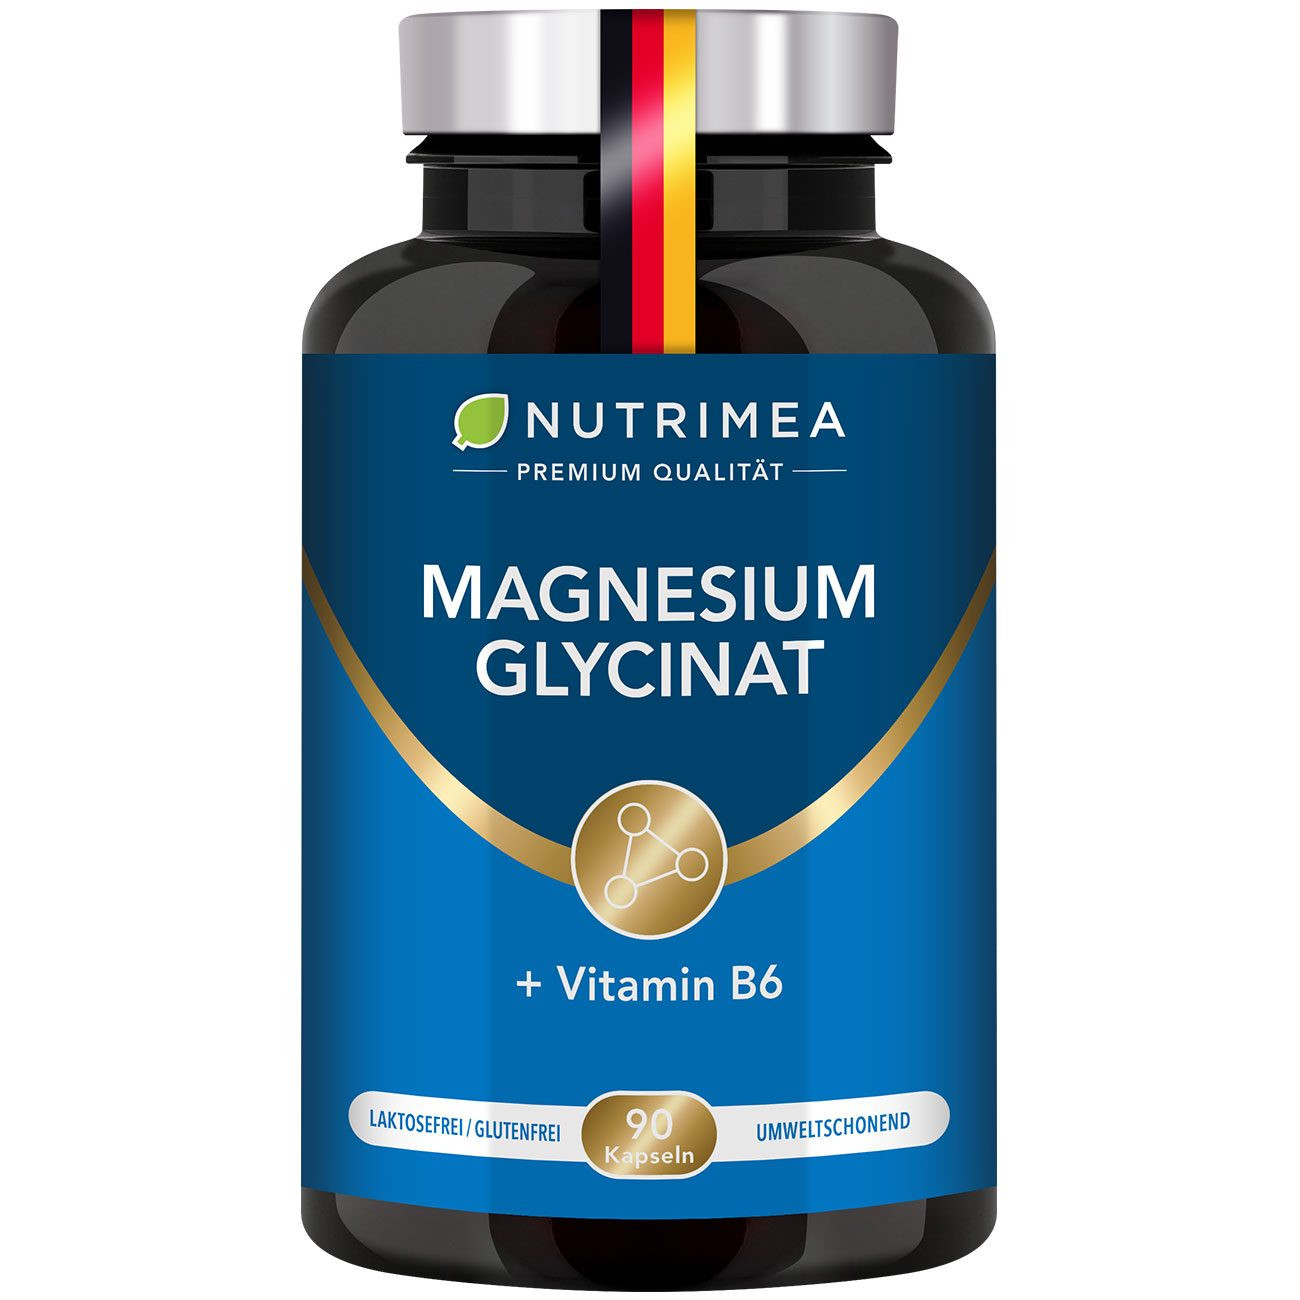 Bild der Beilage Magnesium Glycinat